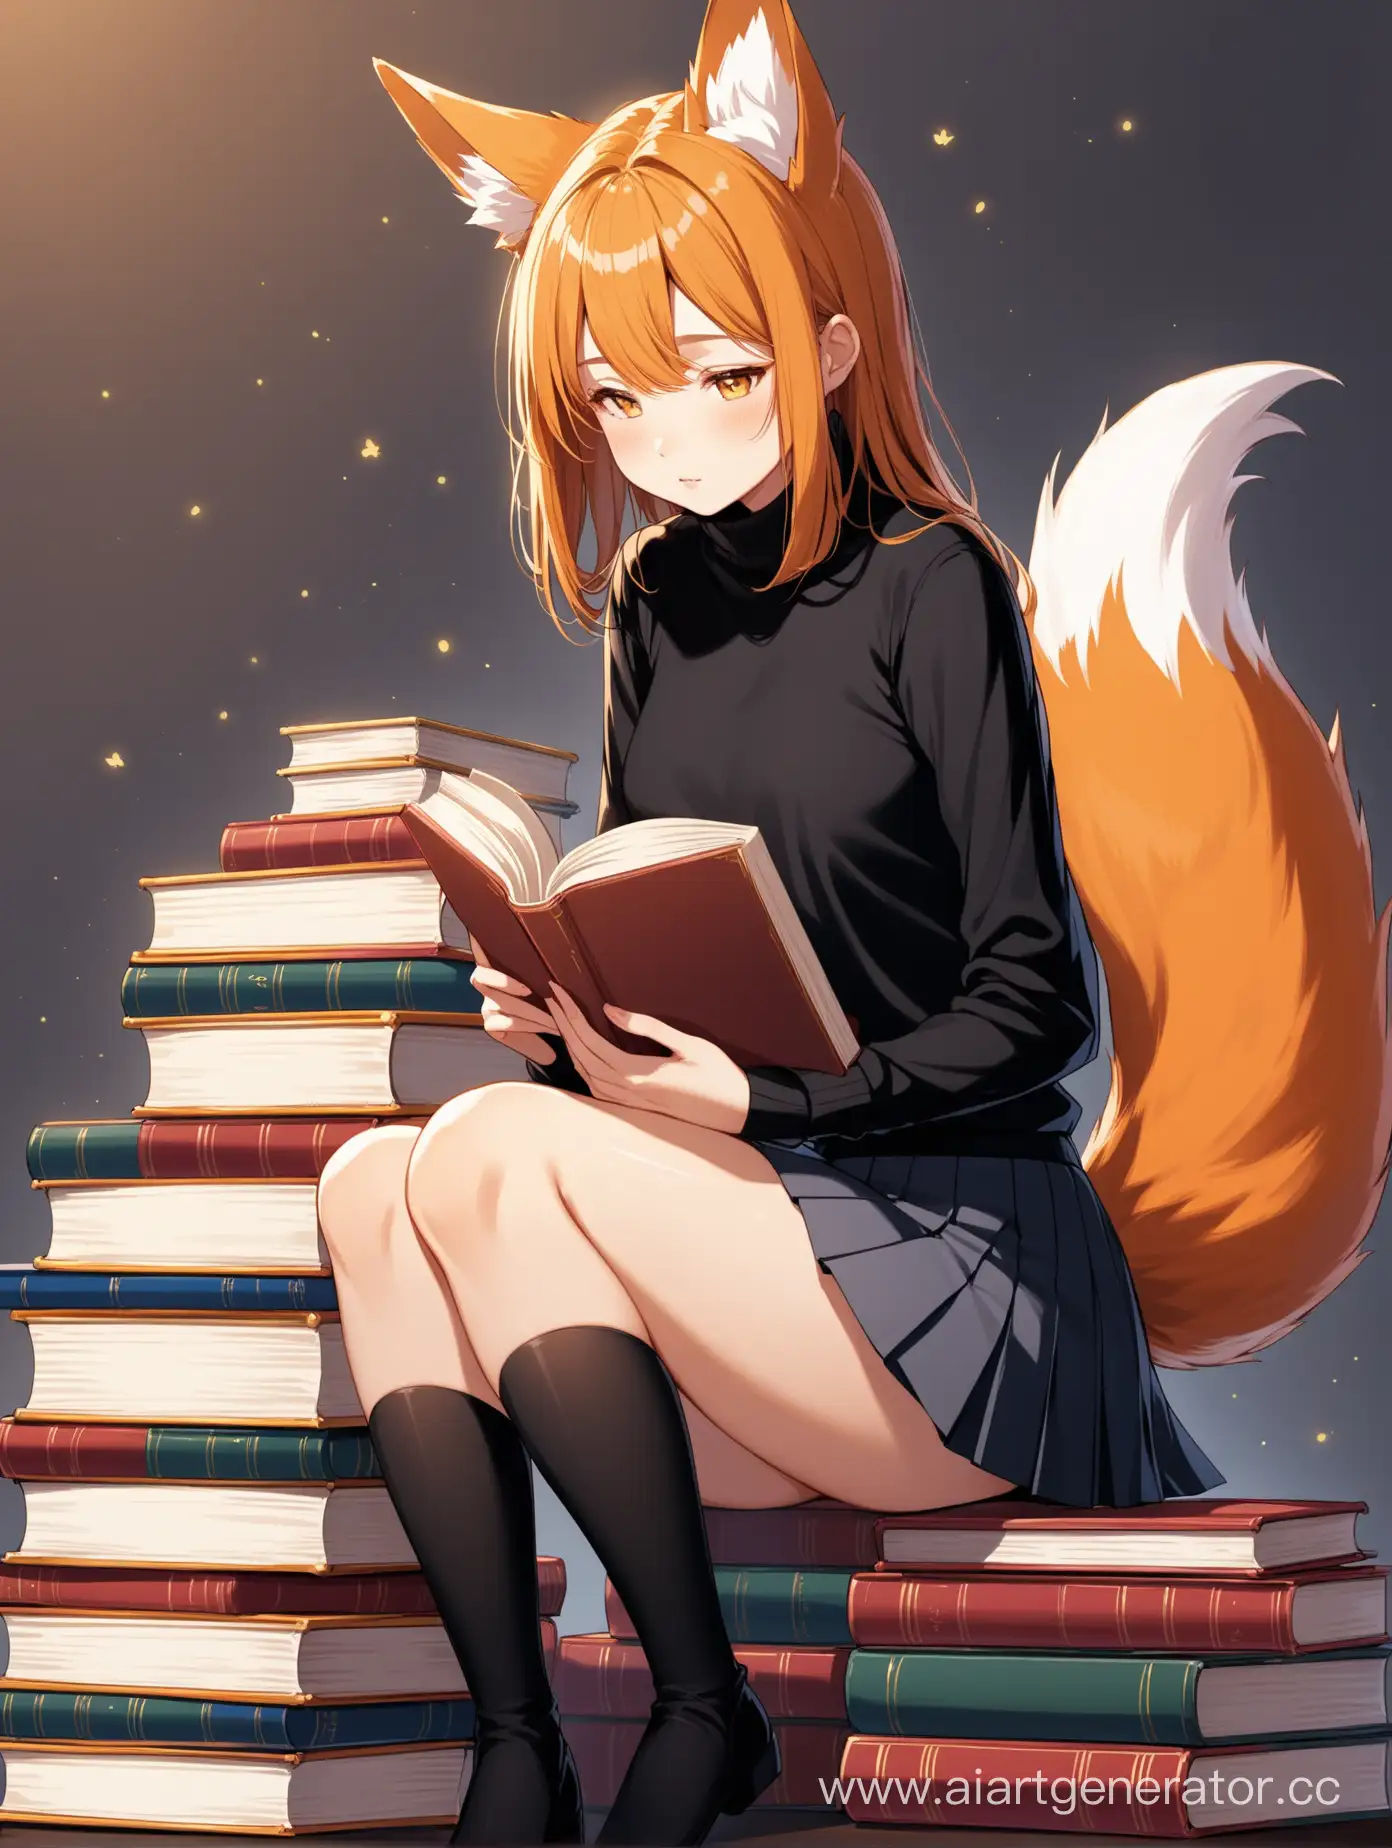 Девушка с ушами лисы и хвостом лисы сидит на стопке книг. Ноги немного согнуты в коленях, она читает книгу взгляд направлен в книгу. Короткая юбка со складками и черная водолазка.